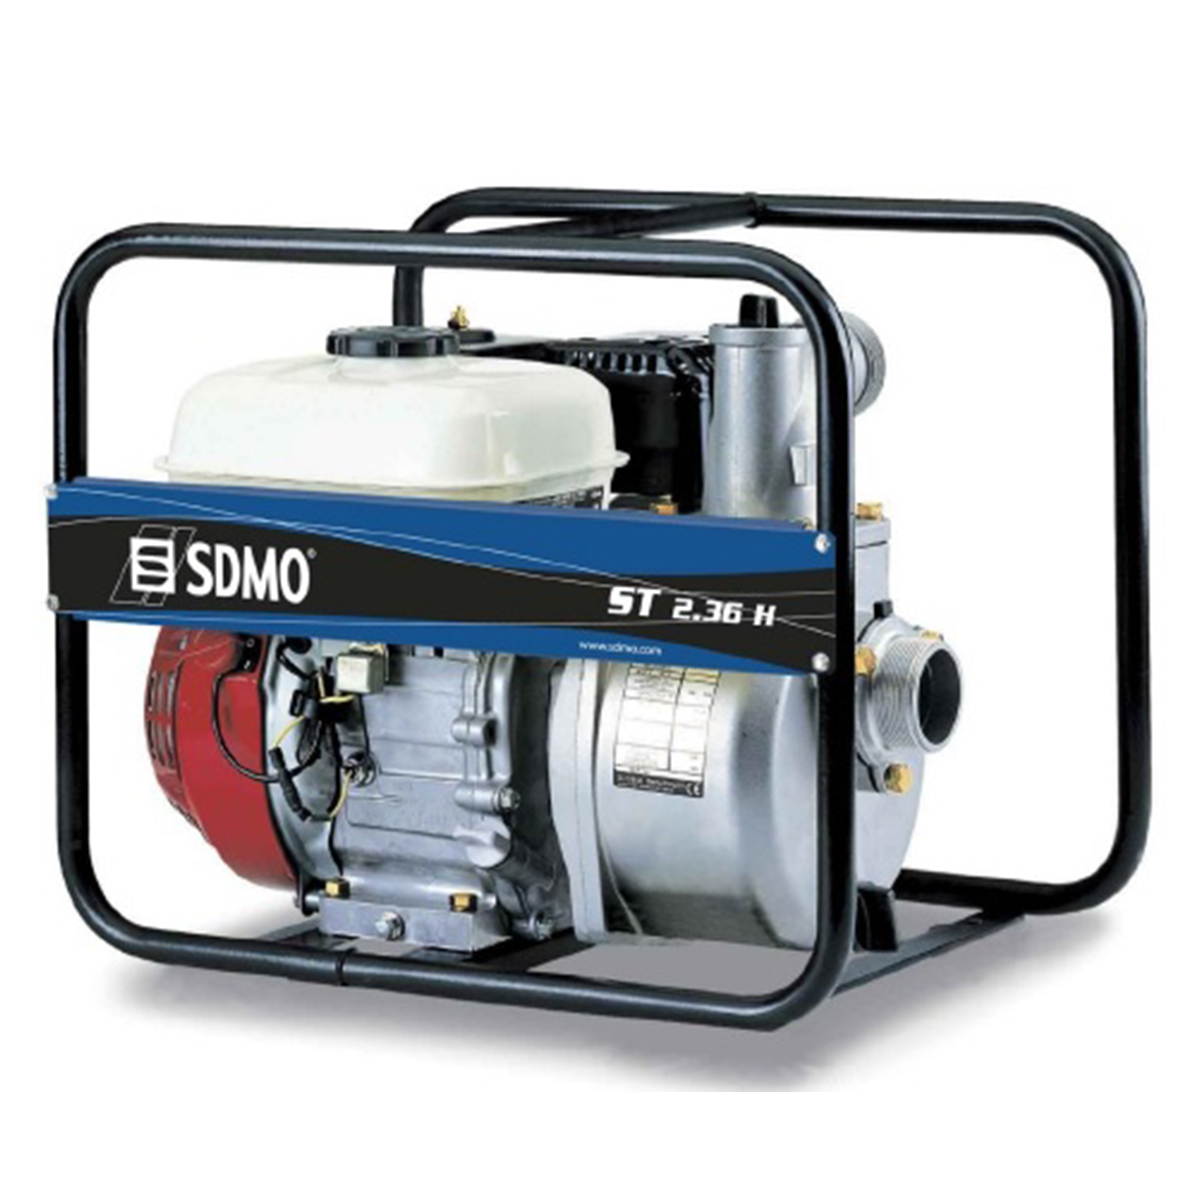 SDMO ST2-36H Petrol Water Pump